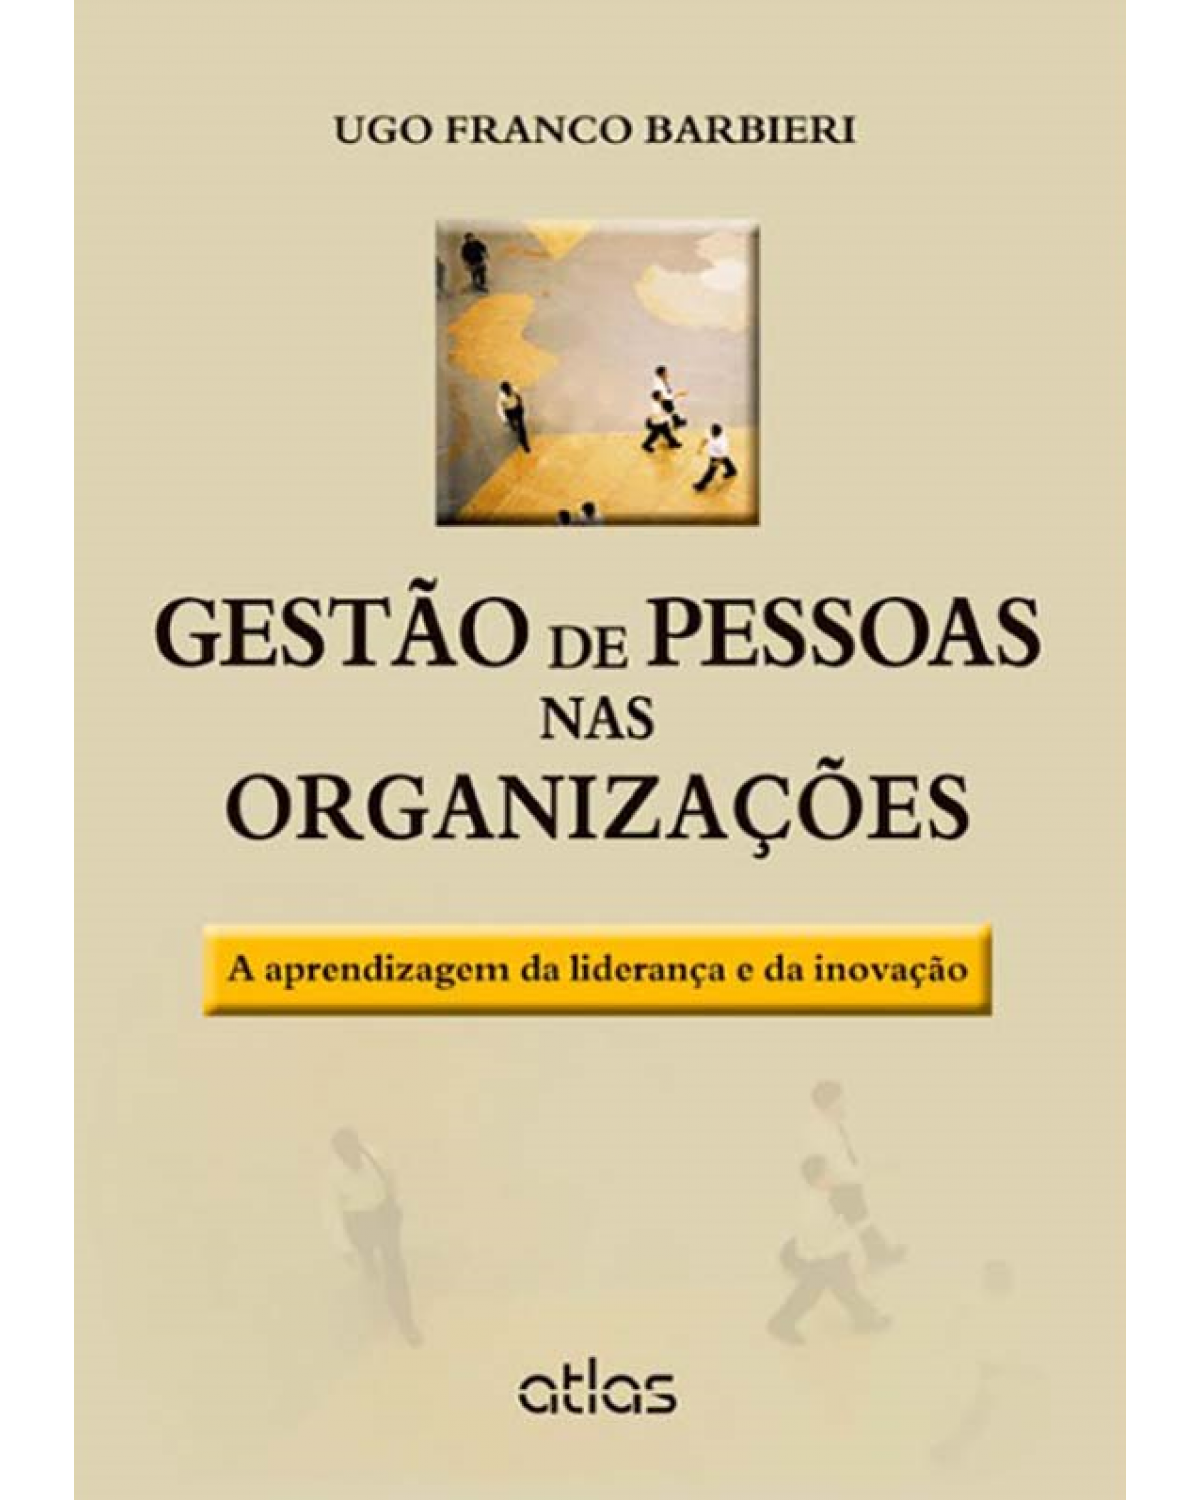 Gestão de pessoas nas organizações - A aprendizagem da liderança e da inovação - 1ª Edição | 2013